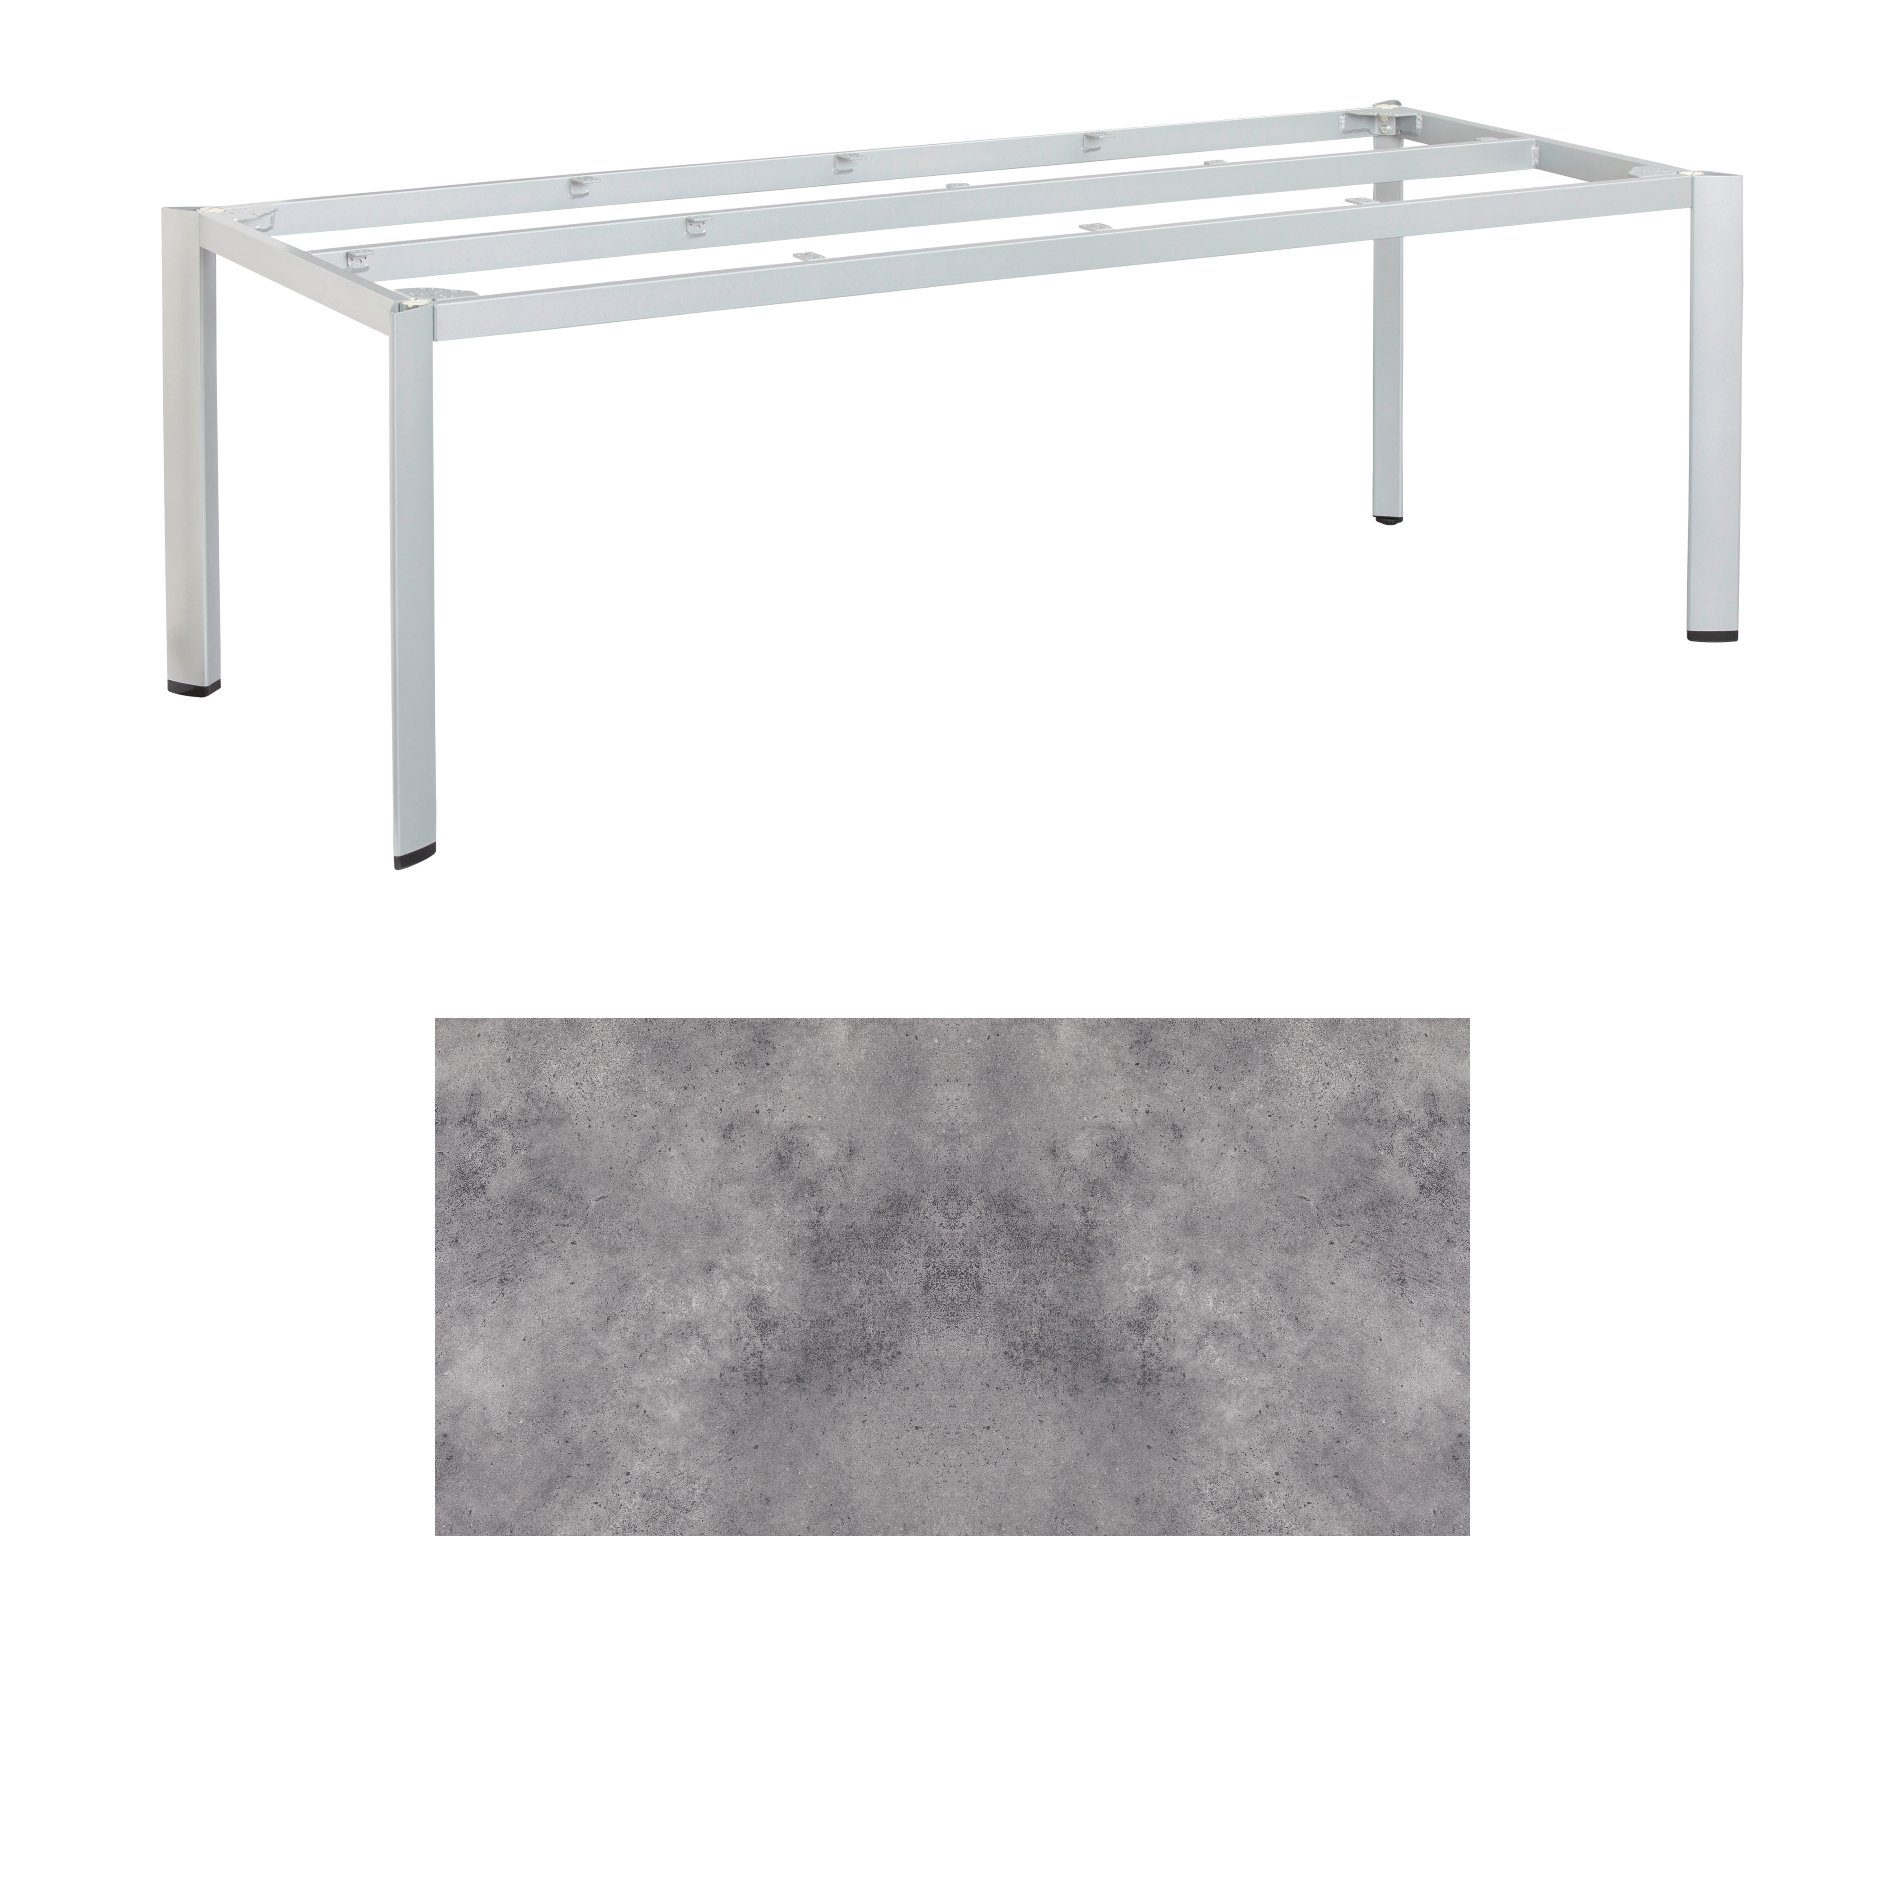 Kettler "Edge" Gartentisch, Gestell Aluminium silber, Tischplatte HPL anthrazit, 220x95 cm